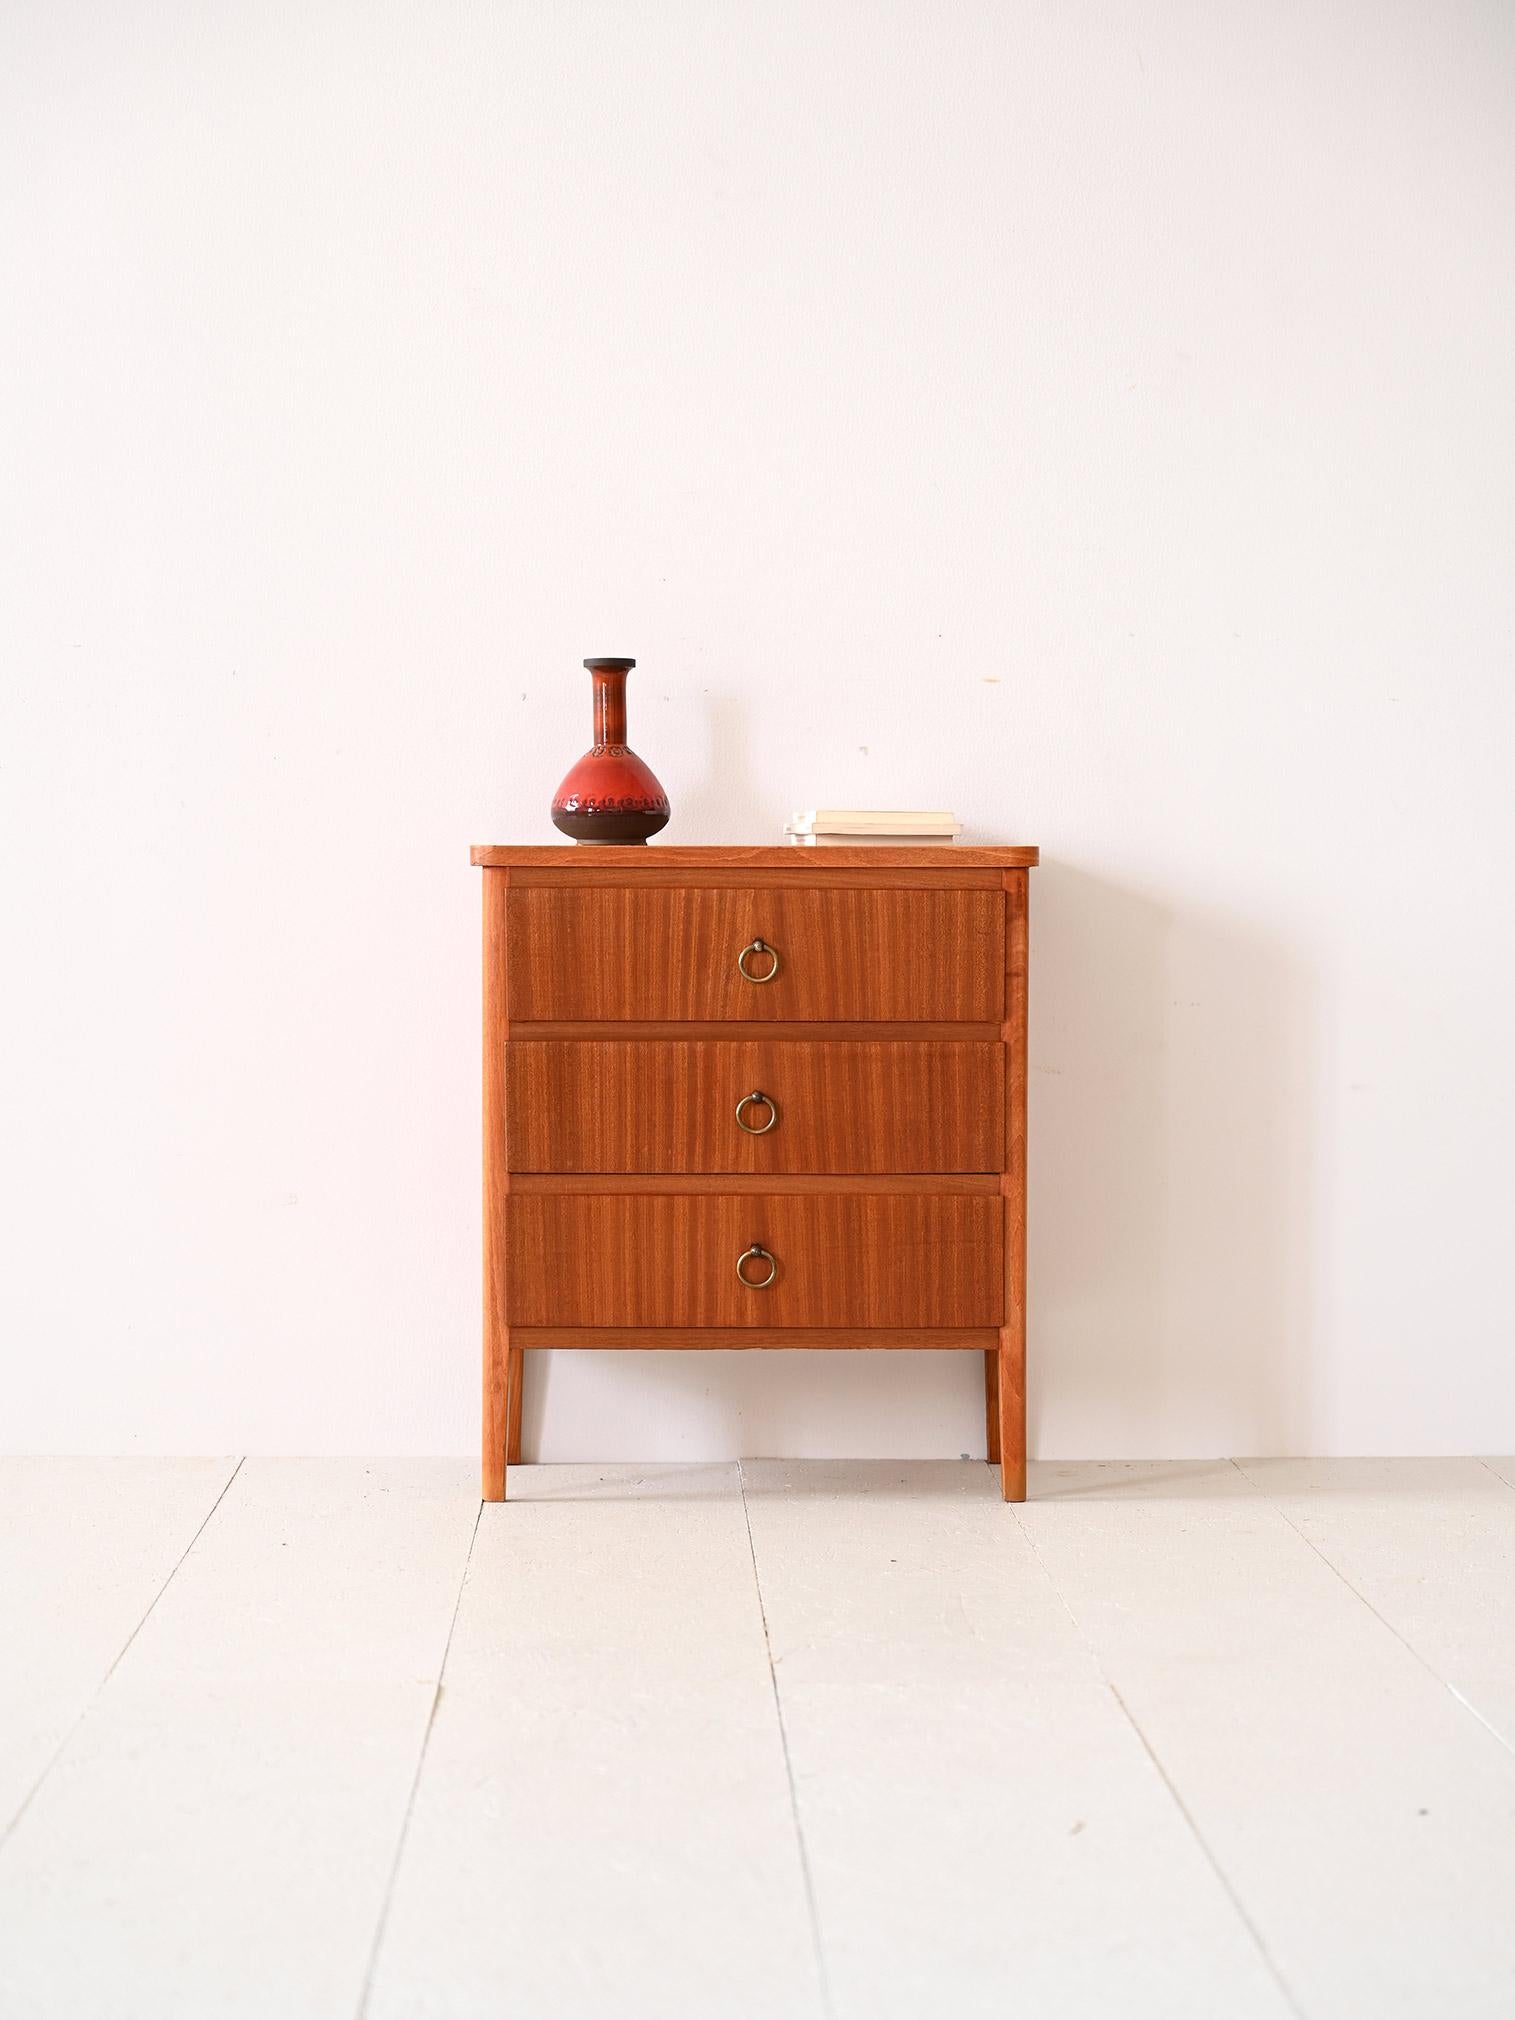 Vintage-Schrank mit drei Schubladen.

Diese kleine Kommode ist ideal als Möbelstück für den Eingangsbereich, das Badezimmer oder als Nachttisch für das Schlafzimmer. 
Mit einem Mahagoni-Rahmen, der dank der Holzmaserung und dem goldenen Griff der